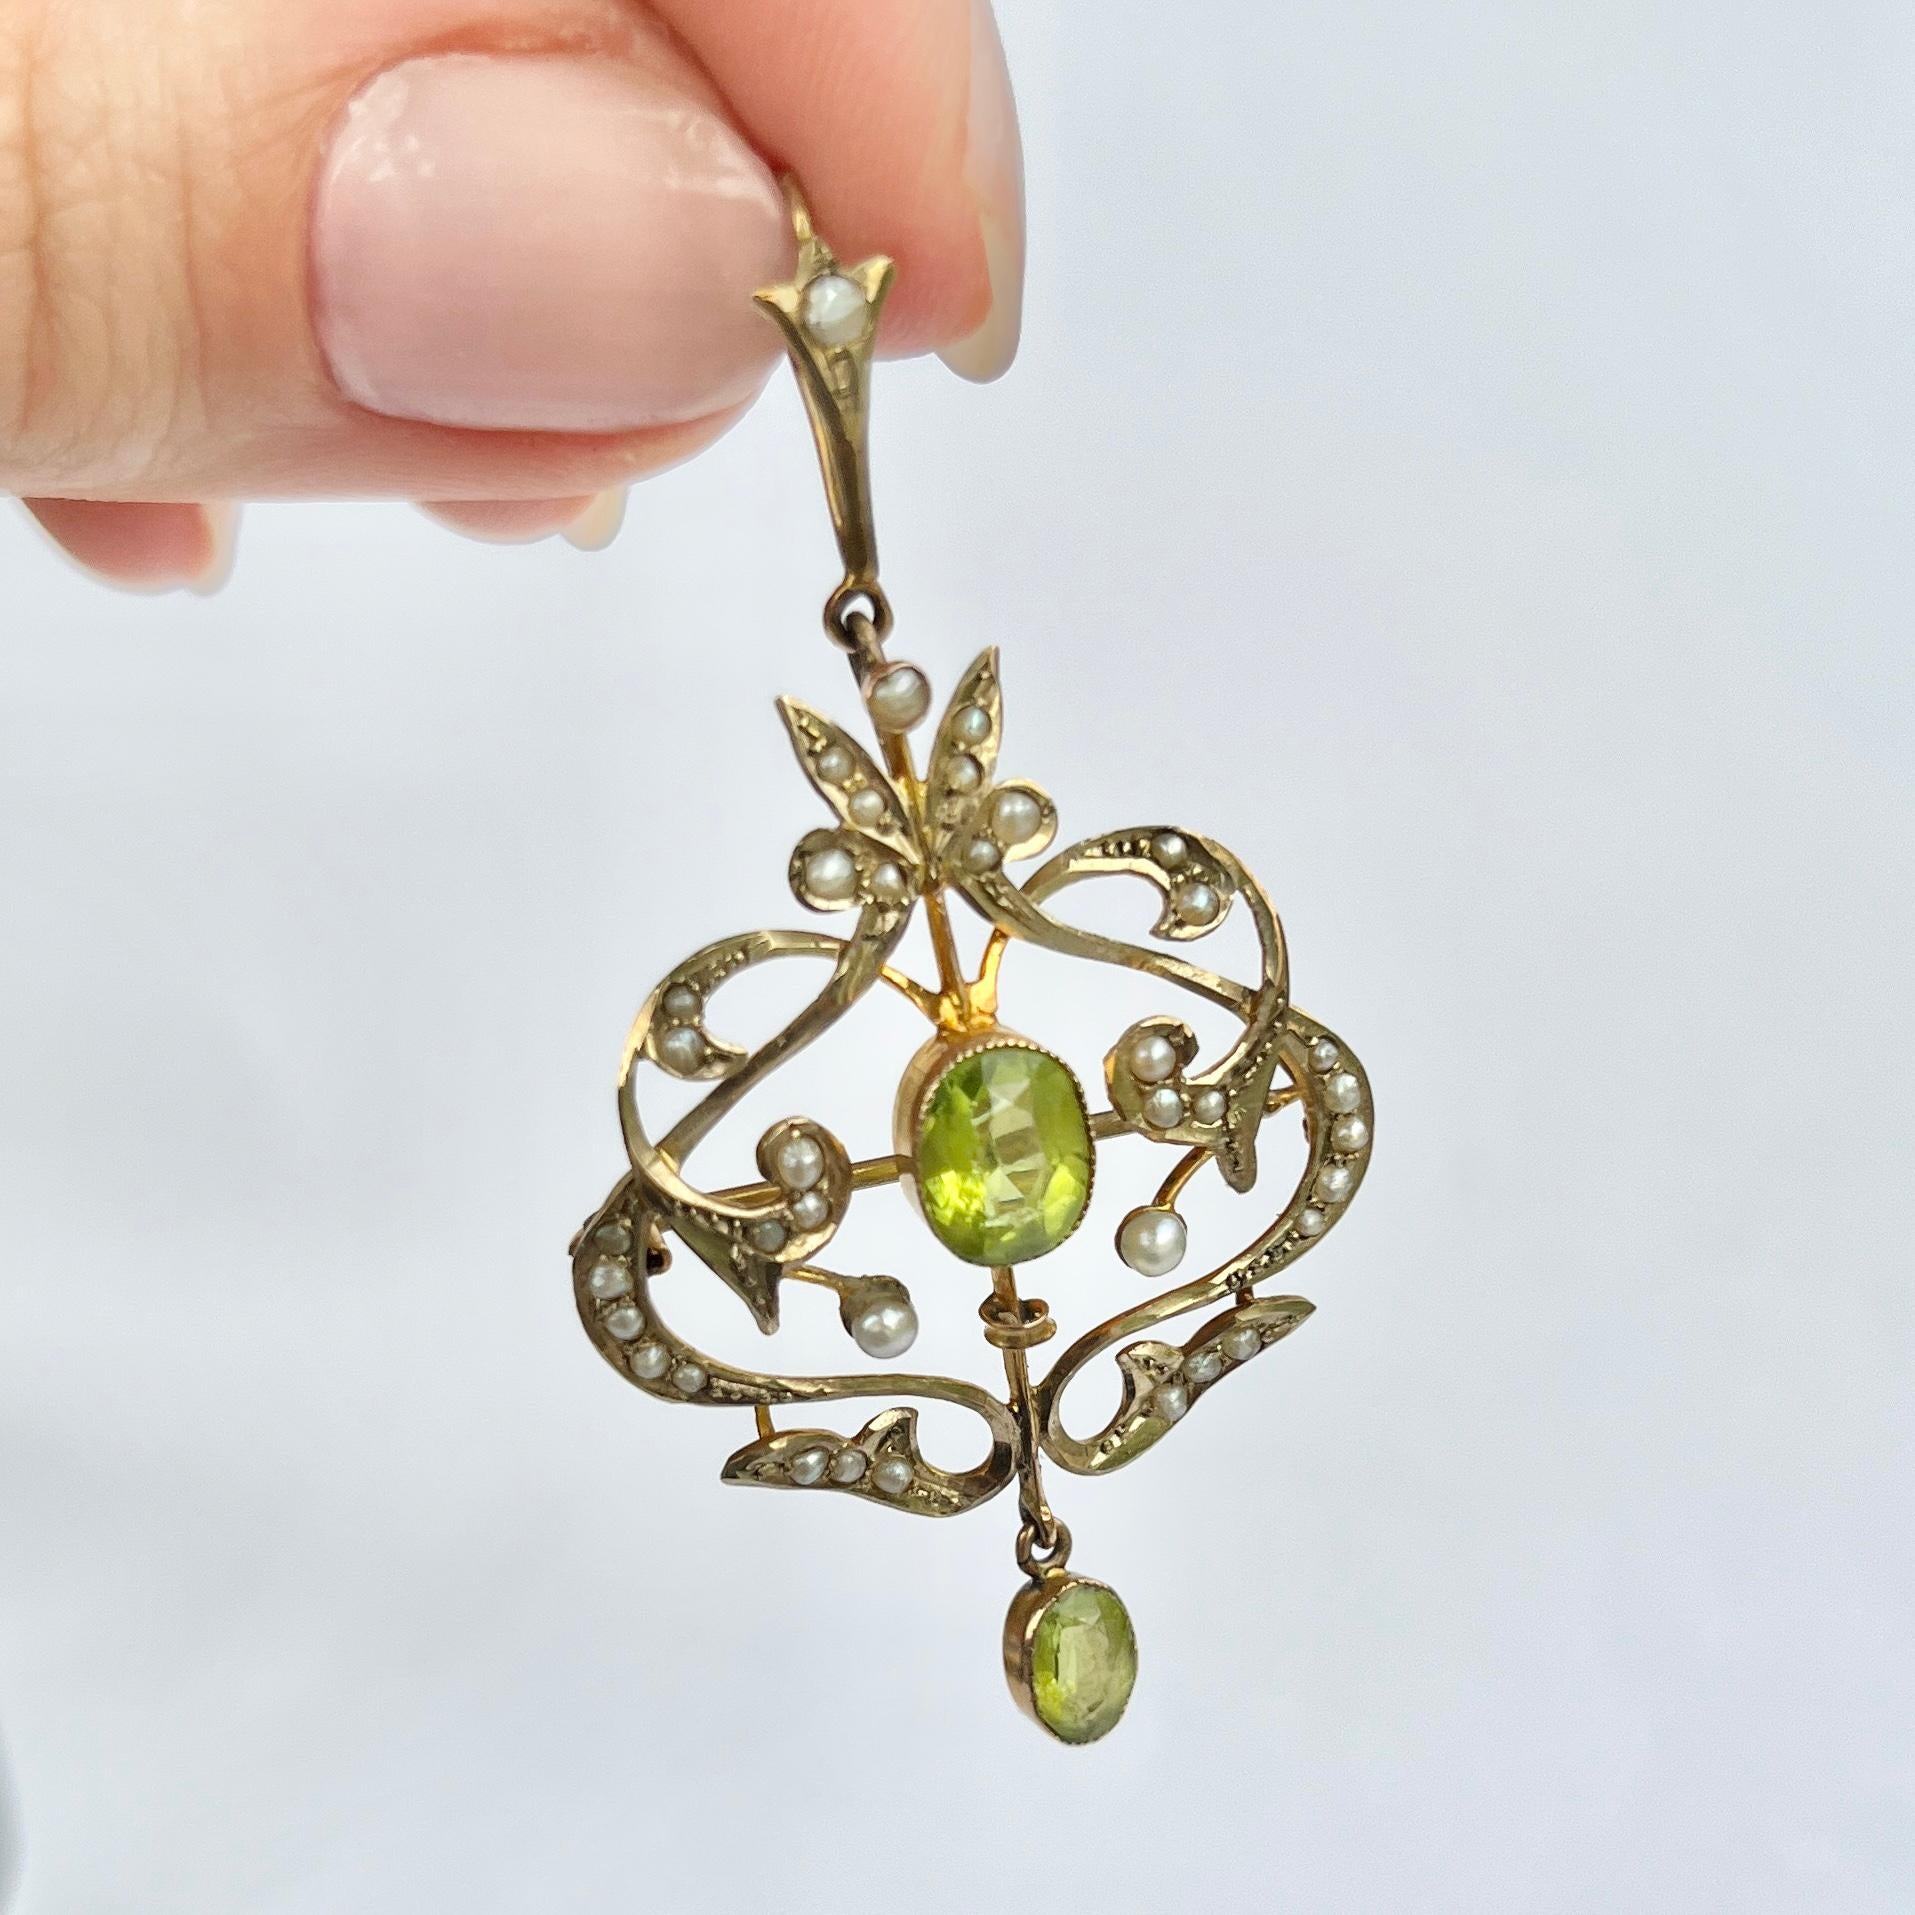 Ce pendentif contient deux pierres de péridot et est réalisé en or 9 carats. Le pendentif peut également être une broche et est décoré de perles de rocaille. 

Pendentif de haut en bas : 5.5cm

Poids : 3.8 g